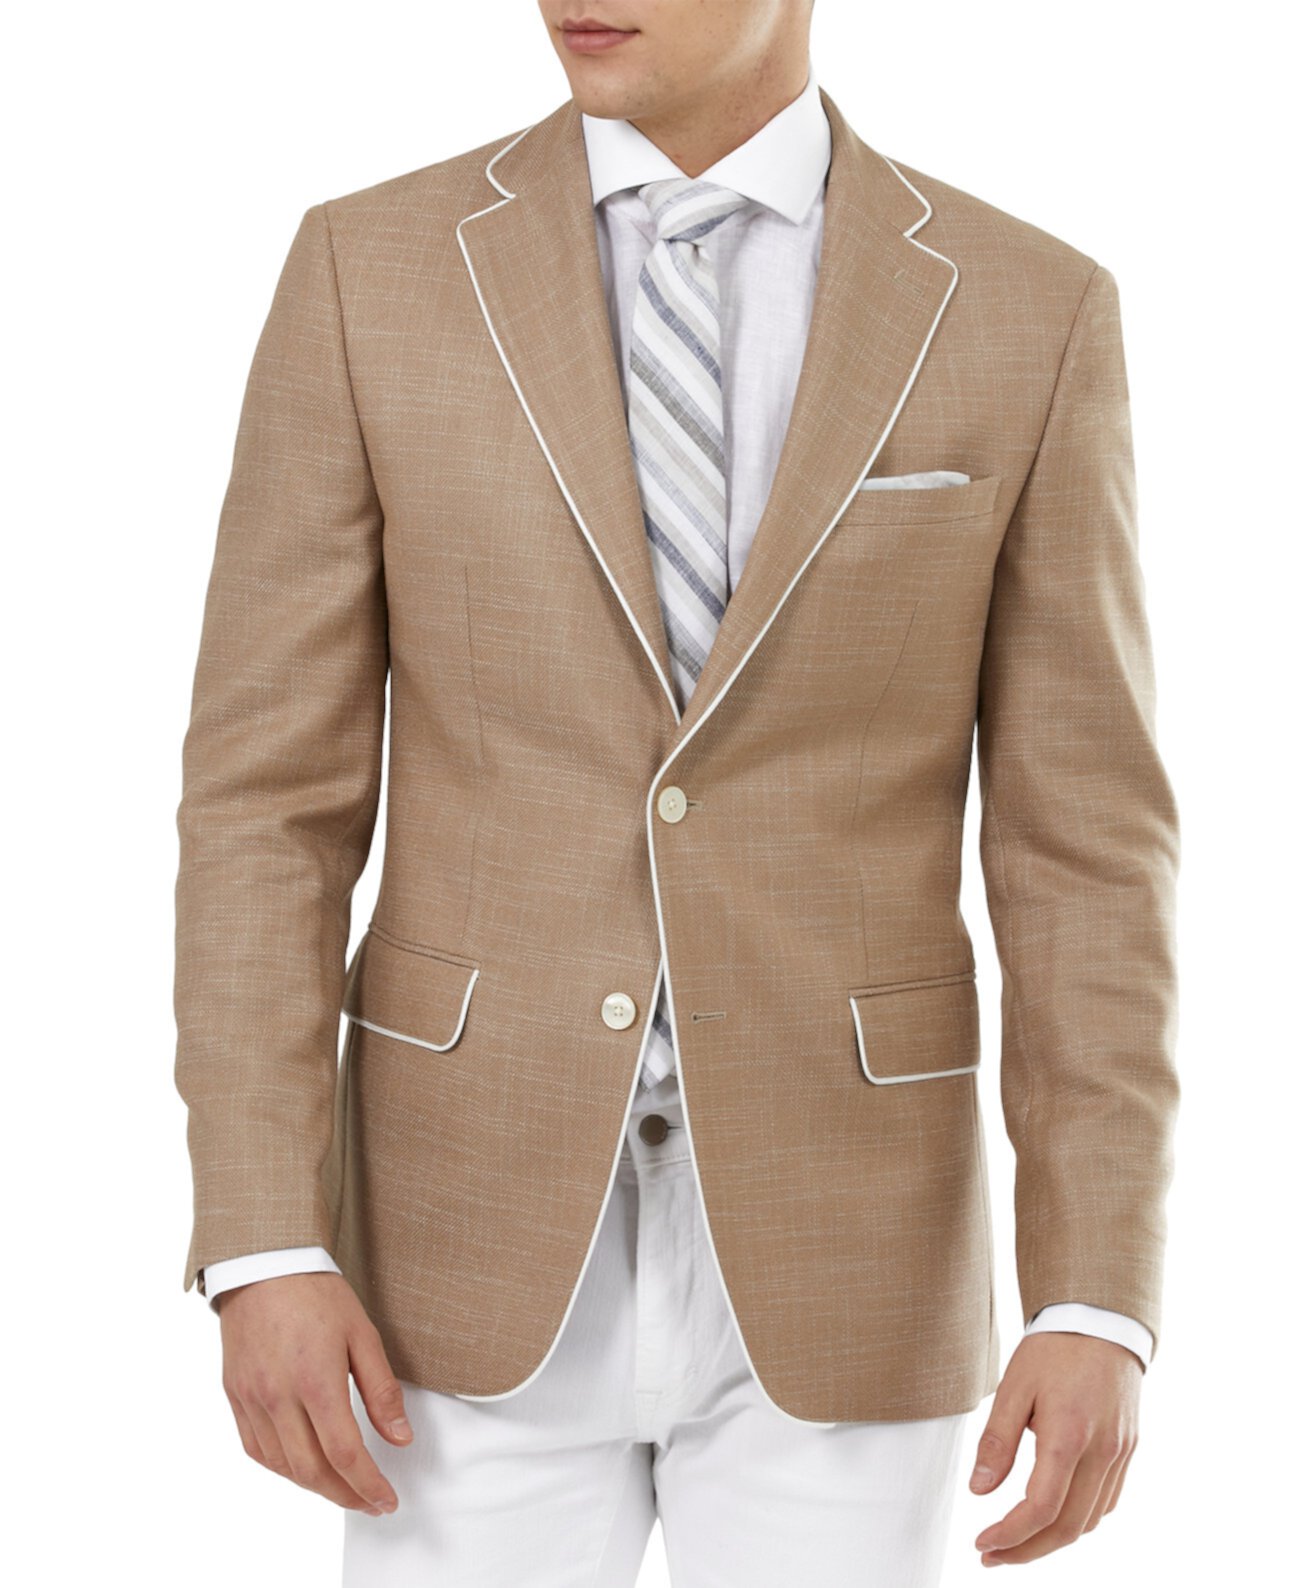 Мужской приталенный светло-коричневый пиджак из плотной ткани Tallia